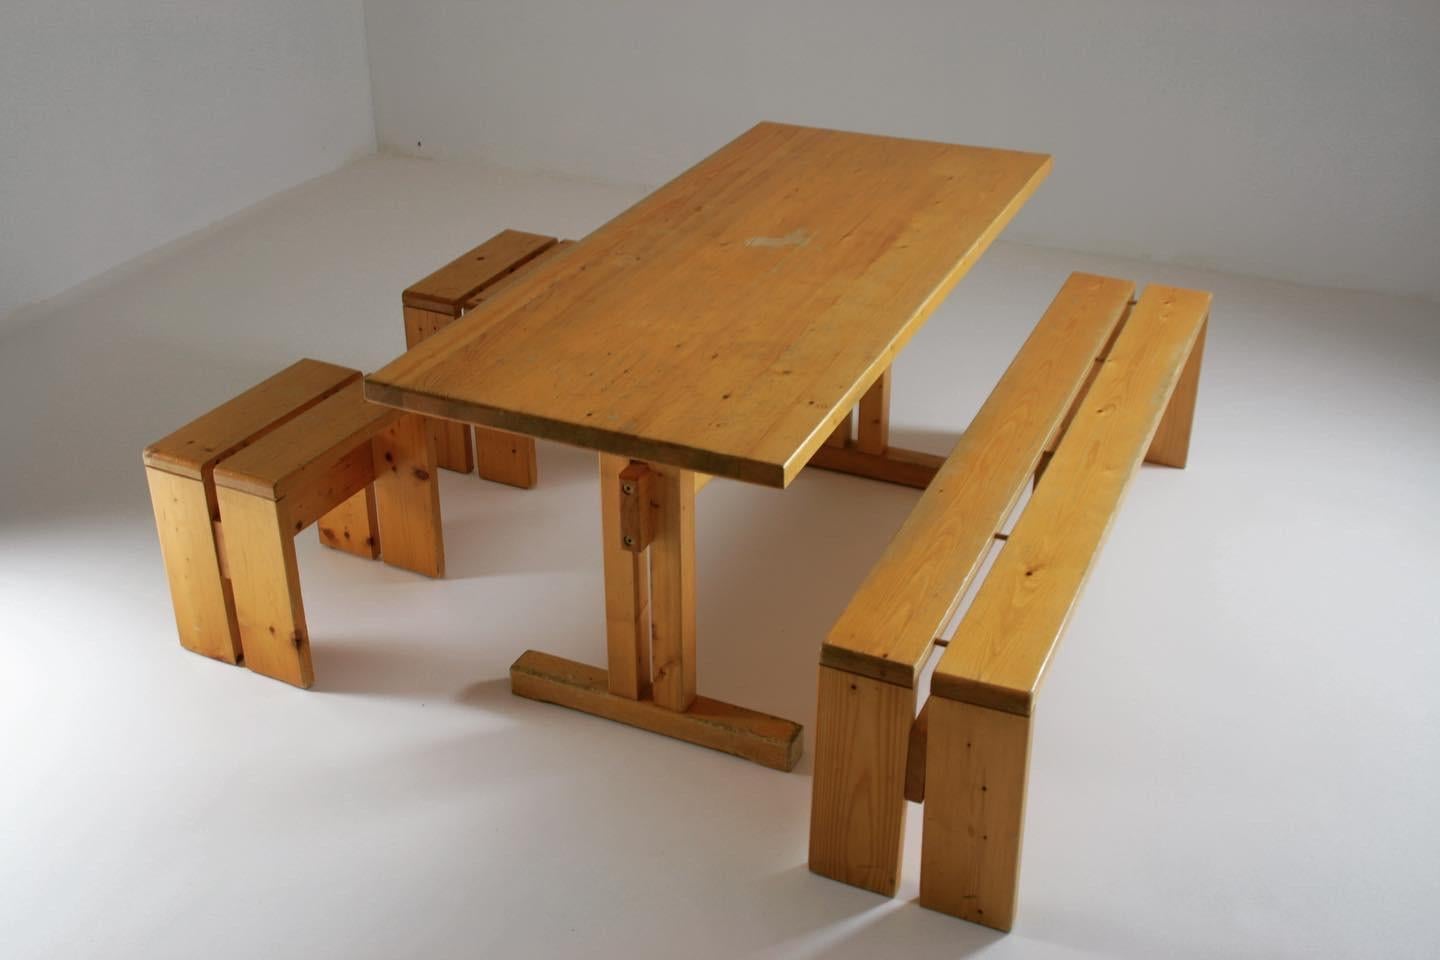 Grande table et grand banc accompagnés de 2 tabourets des Acrs sélectionnés par Charlotte Perriand, France et datant des années 60.

Structure en pin en bon état avec traces d'utilisations. 

Dimensions de la table : l155 X d67 X h70 cm.
Dimensions